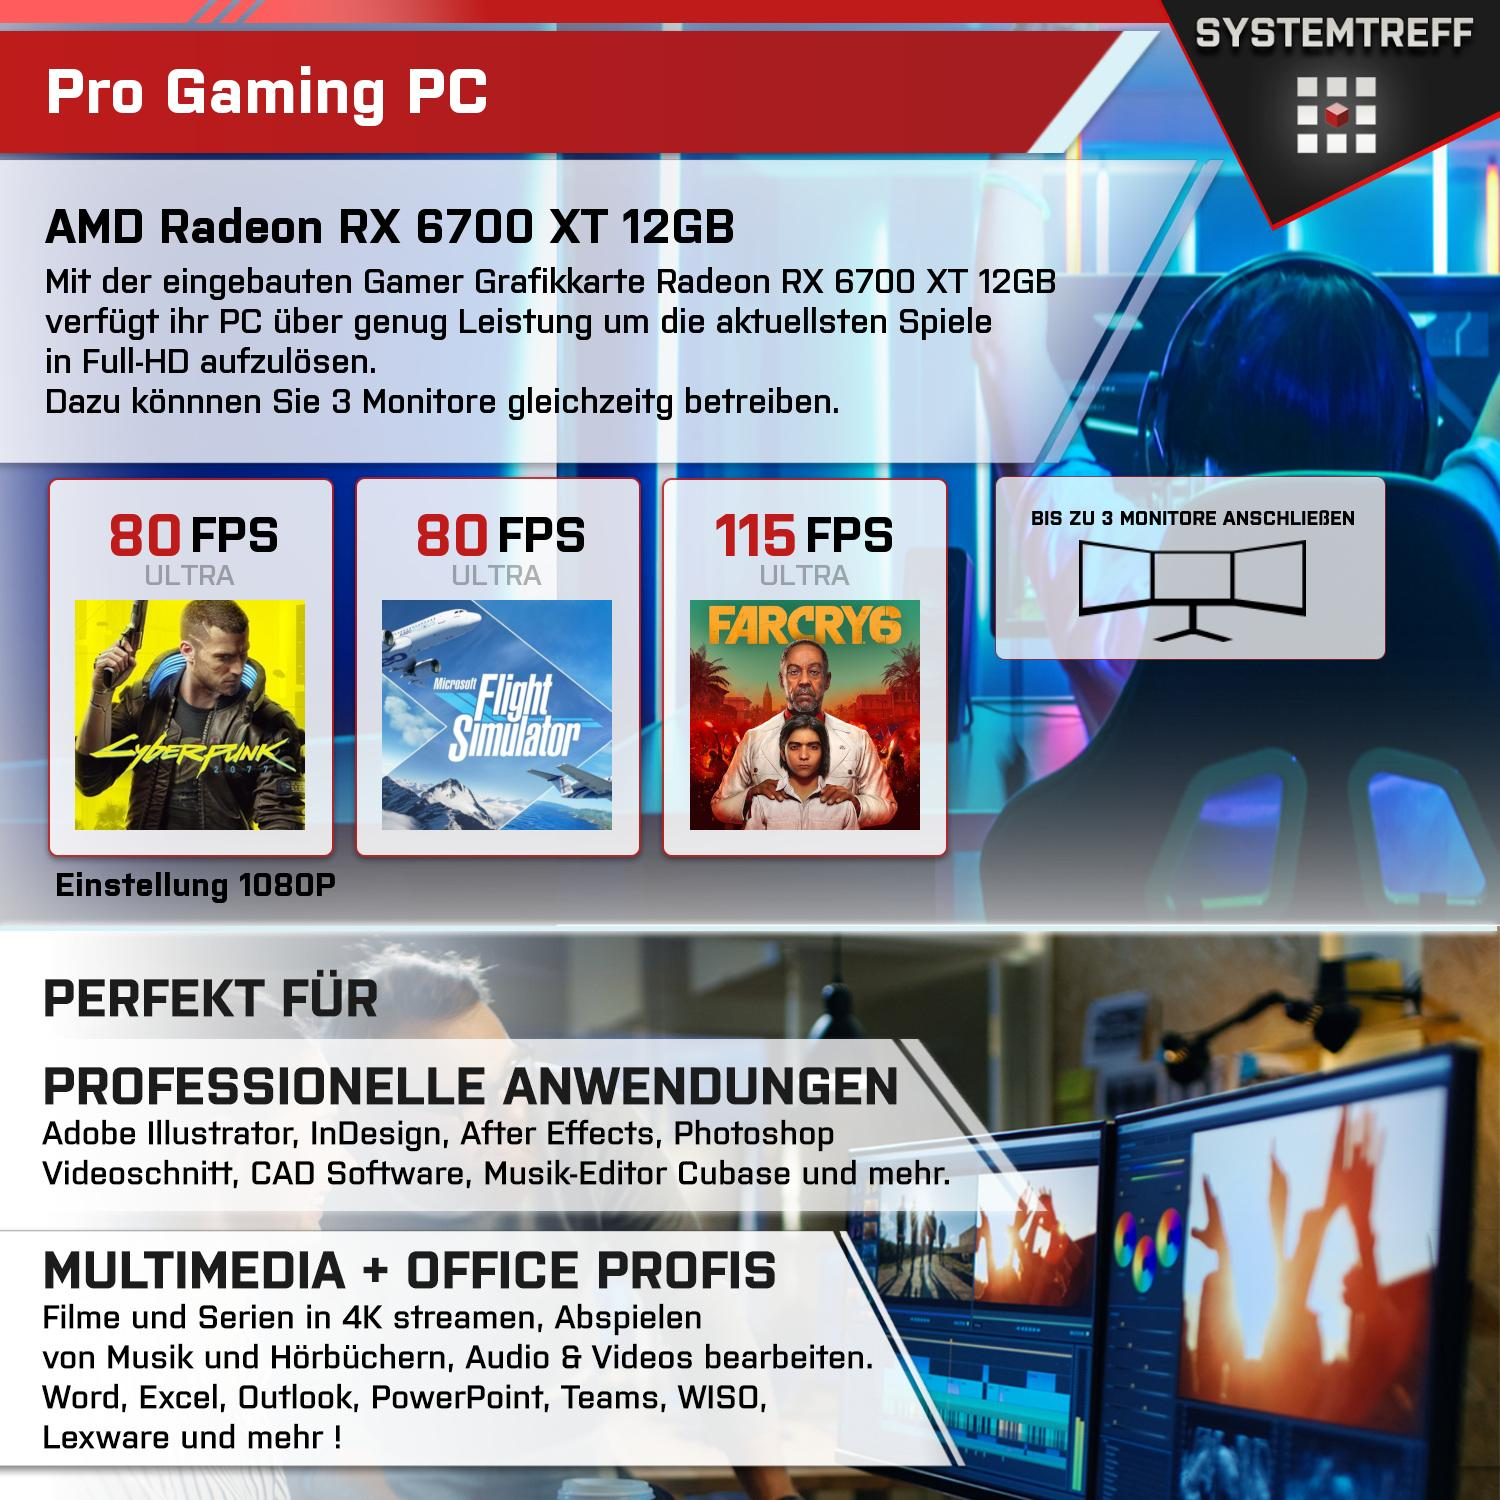 SYSTEMTREFF Gaming Komplett mit XT i7-11700KF, Komplett mSSD, Intel i7-11700KF GB RX GB Core RAM, Prozessor, 6700 32 GDDR6, PC 12 1000 12GB Radeon AMD GB